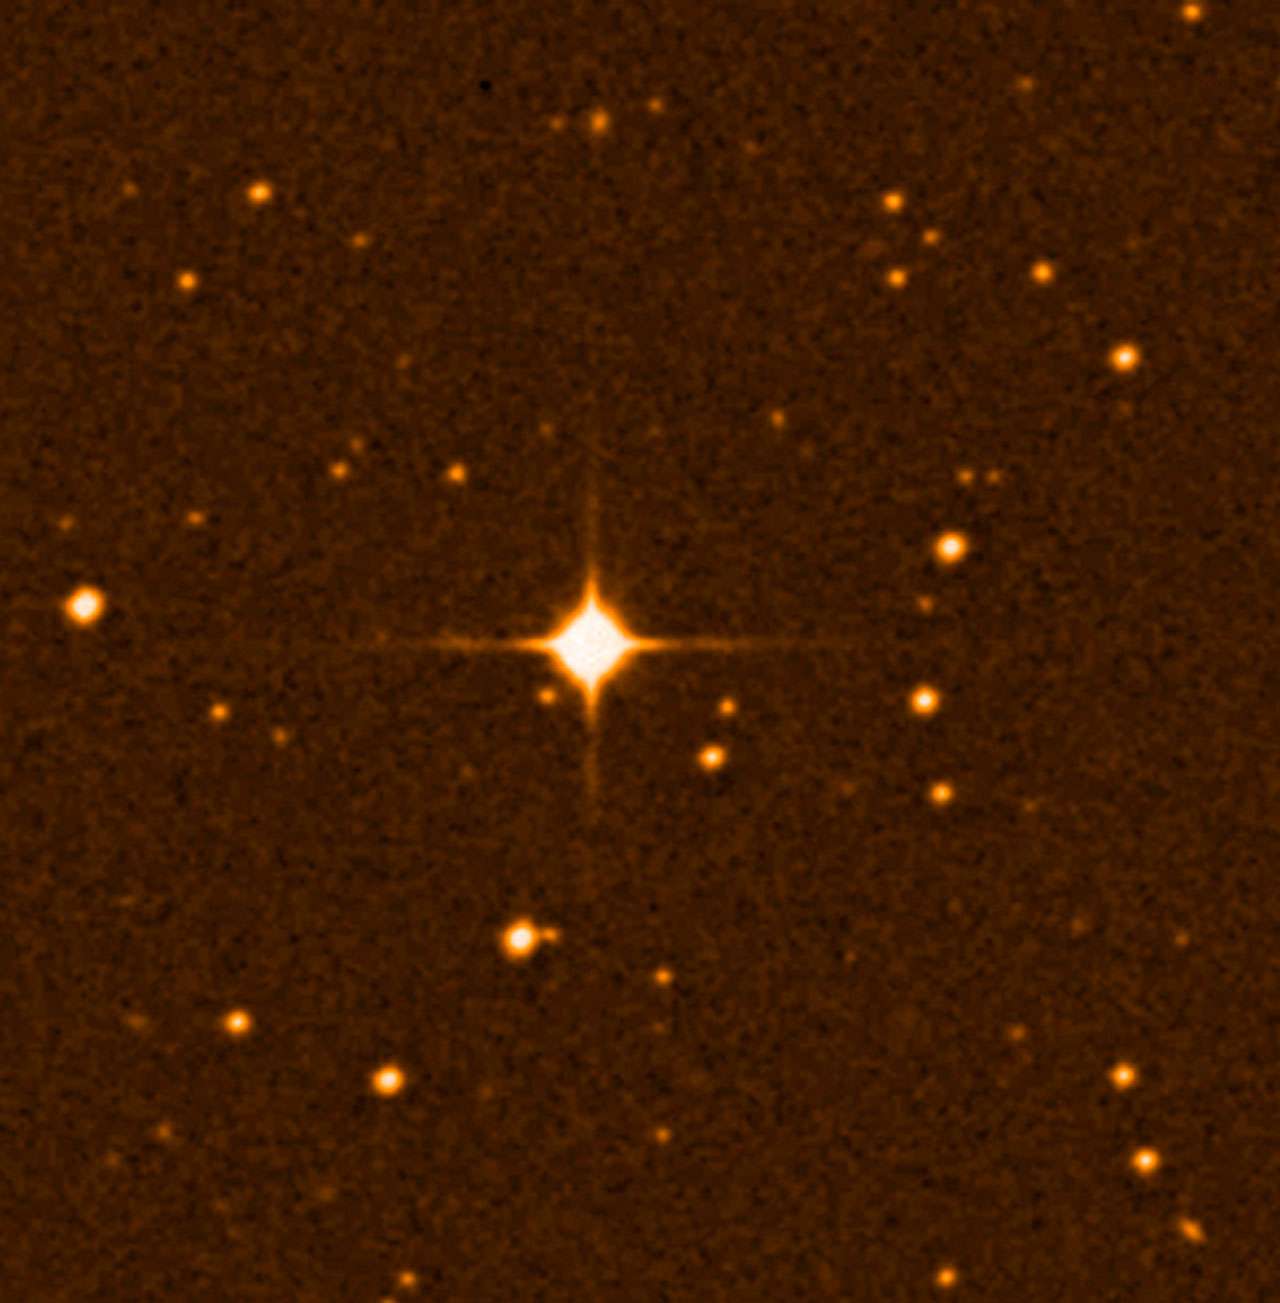 Gliese 581 est une étoile naine rouge située dans la constellation de la Balance, à 20,5 années-lumière du Système solaire. Il s'agissait en janvier 2009 de la 87e plus proche étoile connue. Six exoplanètes ont été détectées autour de Gliese 581, dont deux, Gliese 581 c et Gliese 581 d, sont les premières exoplanètes à avoir été trouvées dans la zone habitable de leur étoile. © Wikipédia, ESO